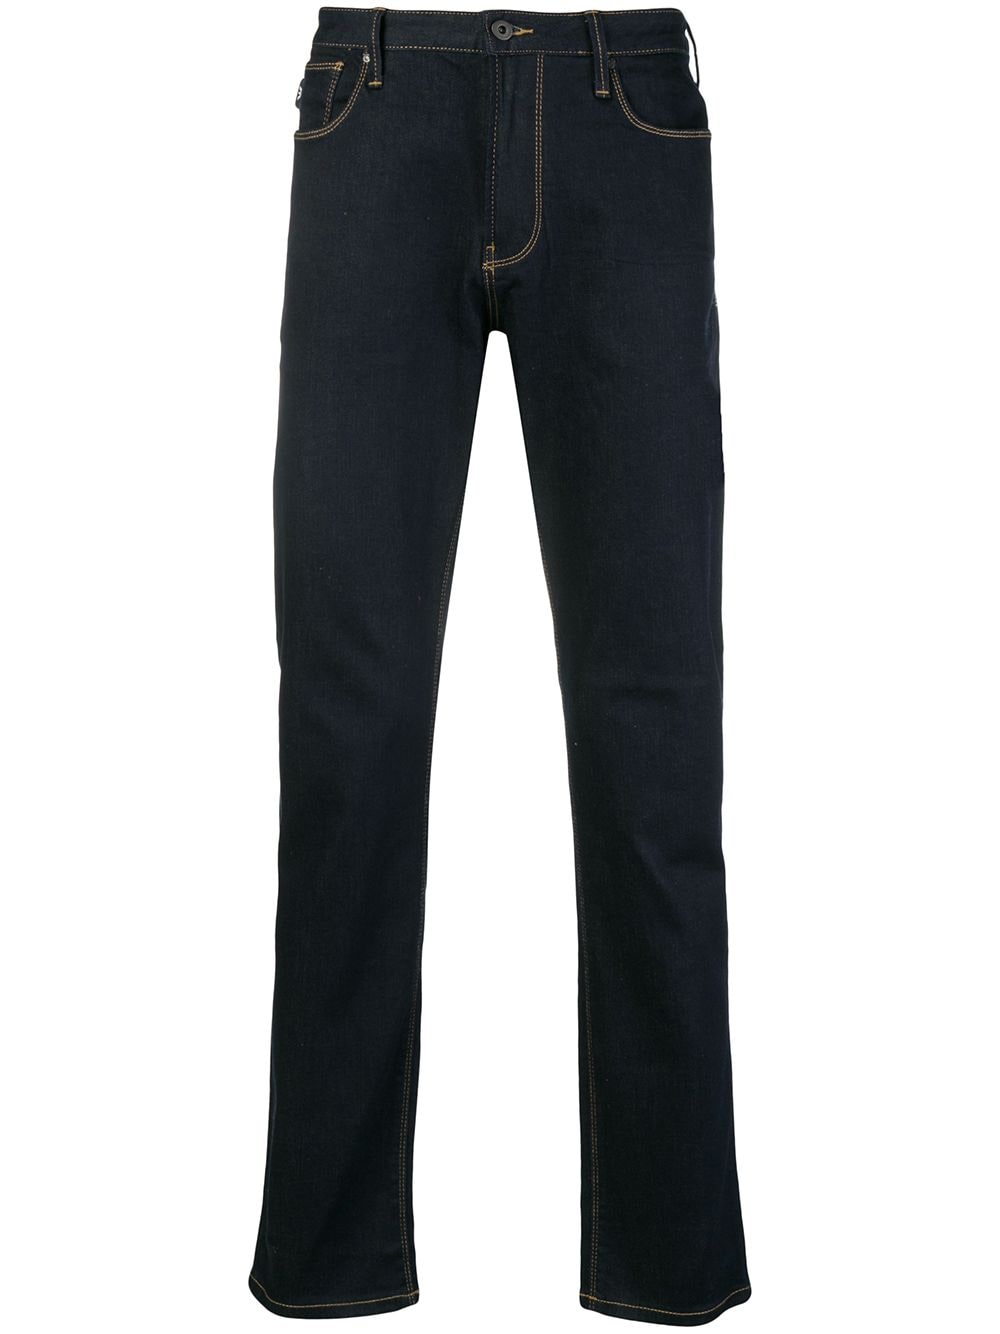 Emporio Armani Classic Dark Jeans - Farfetch